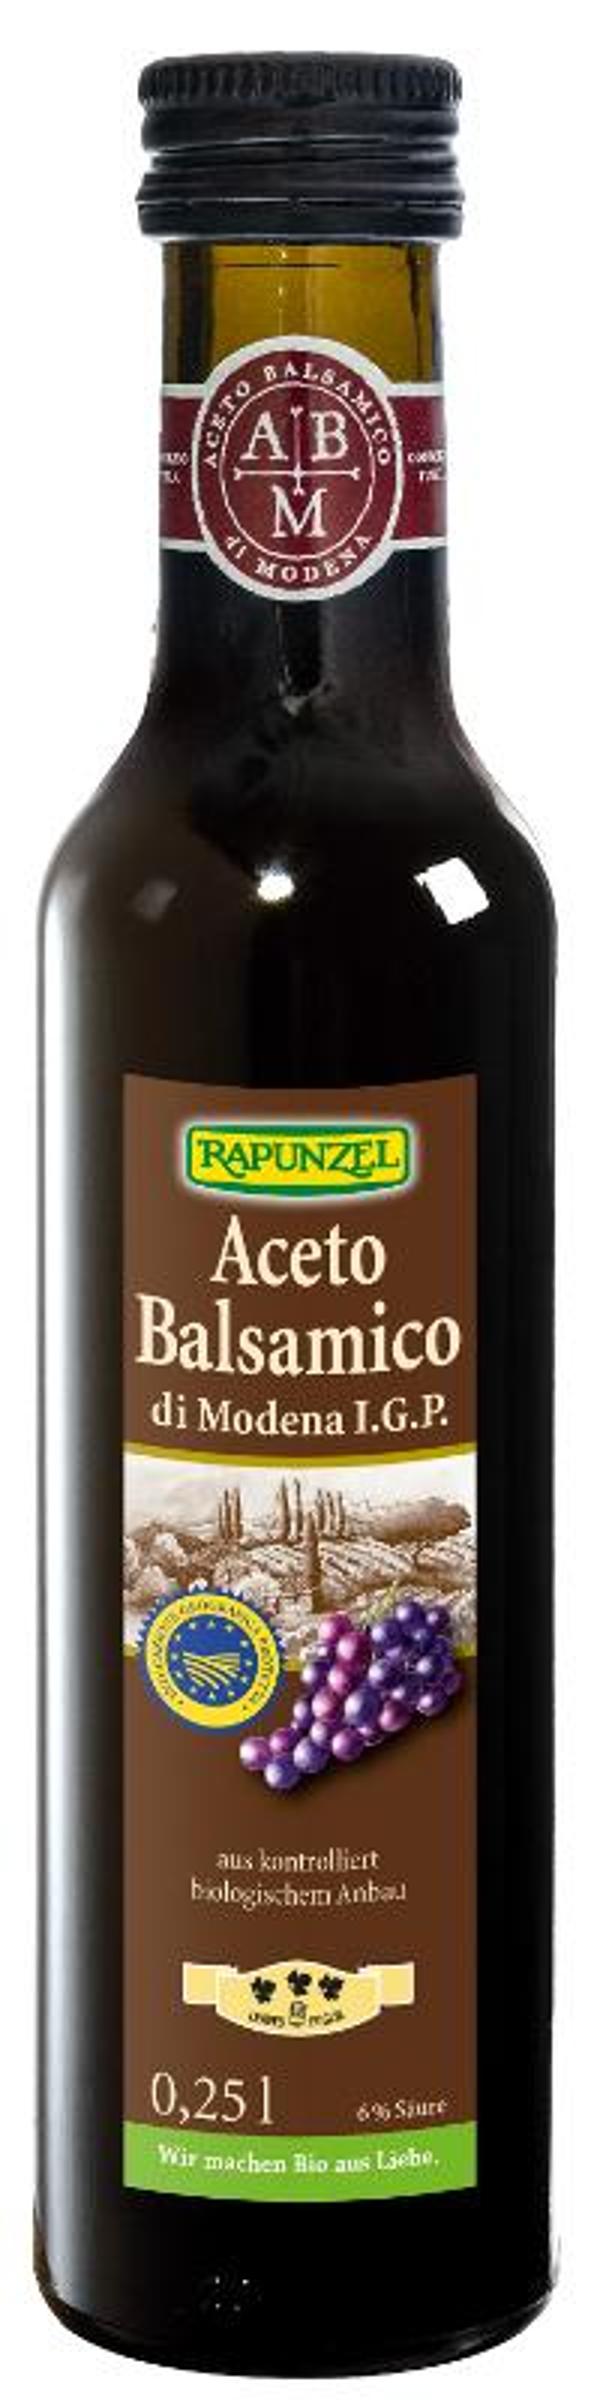 Produktfoto zu Aceto Balsamico di Modena IGP, 0,25 l